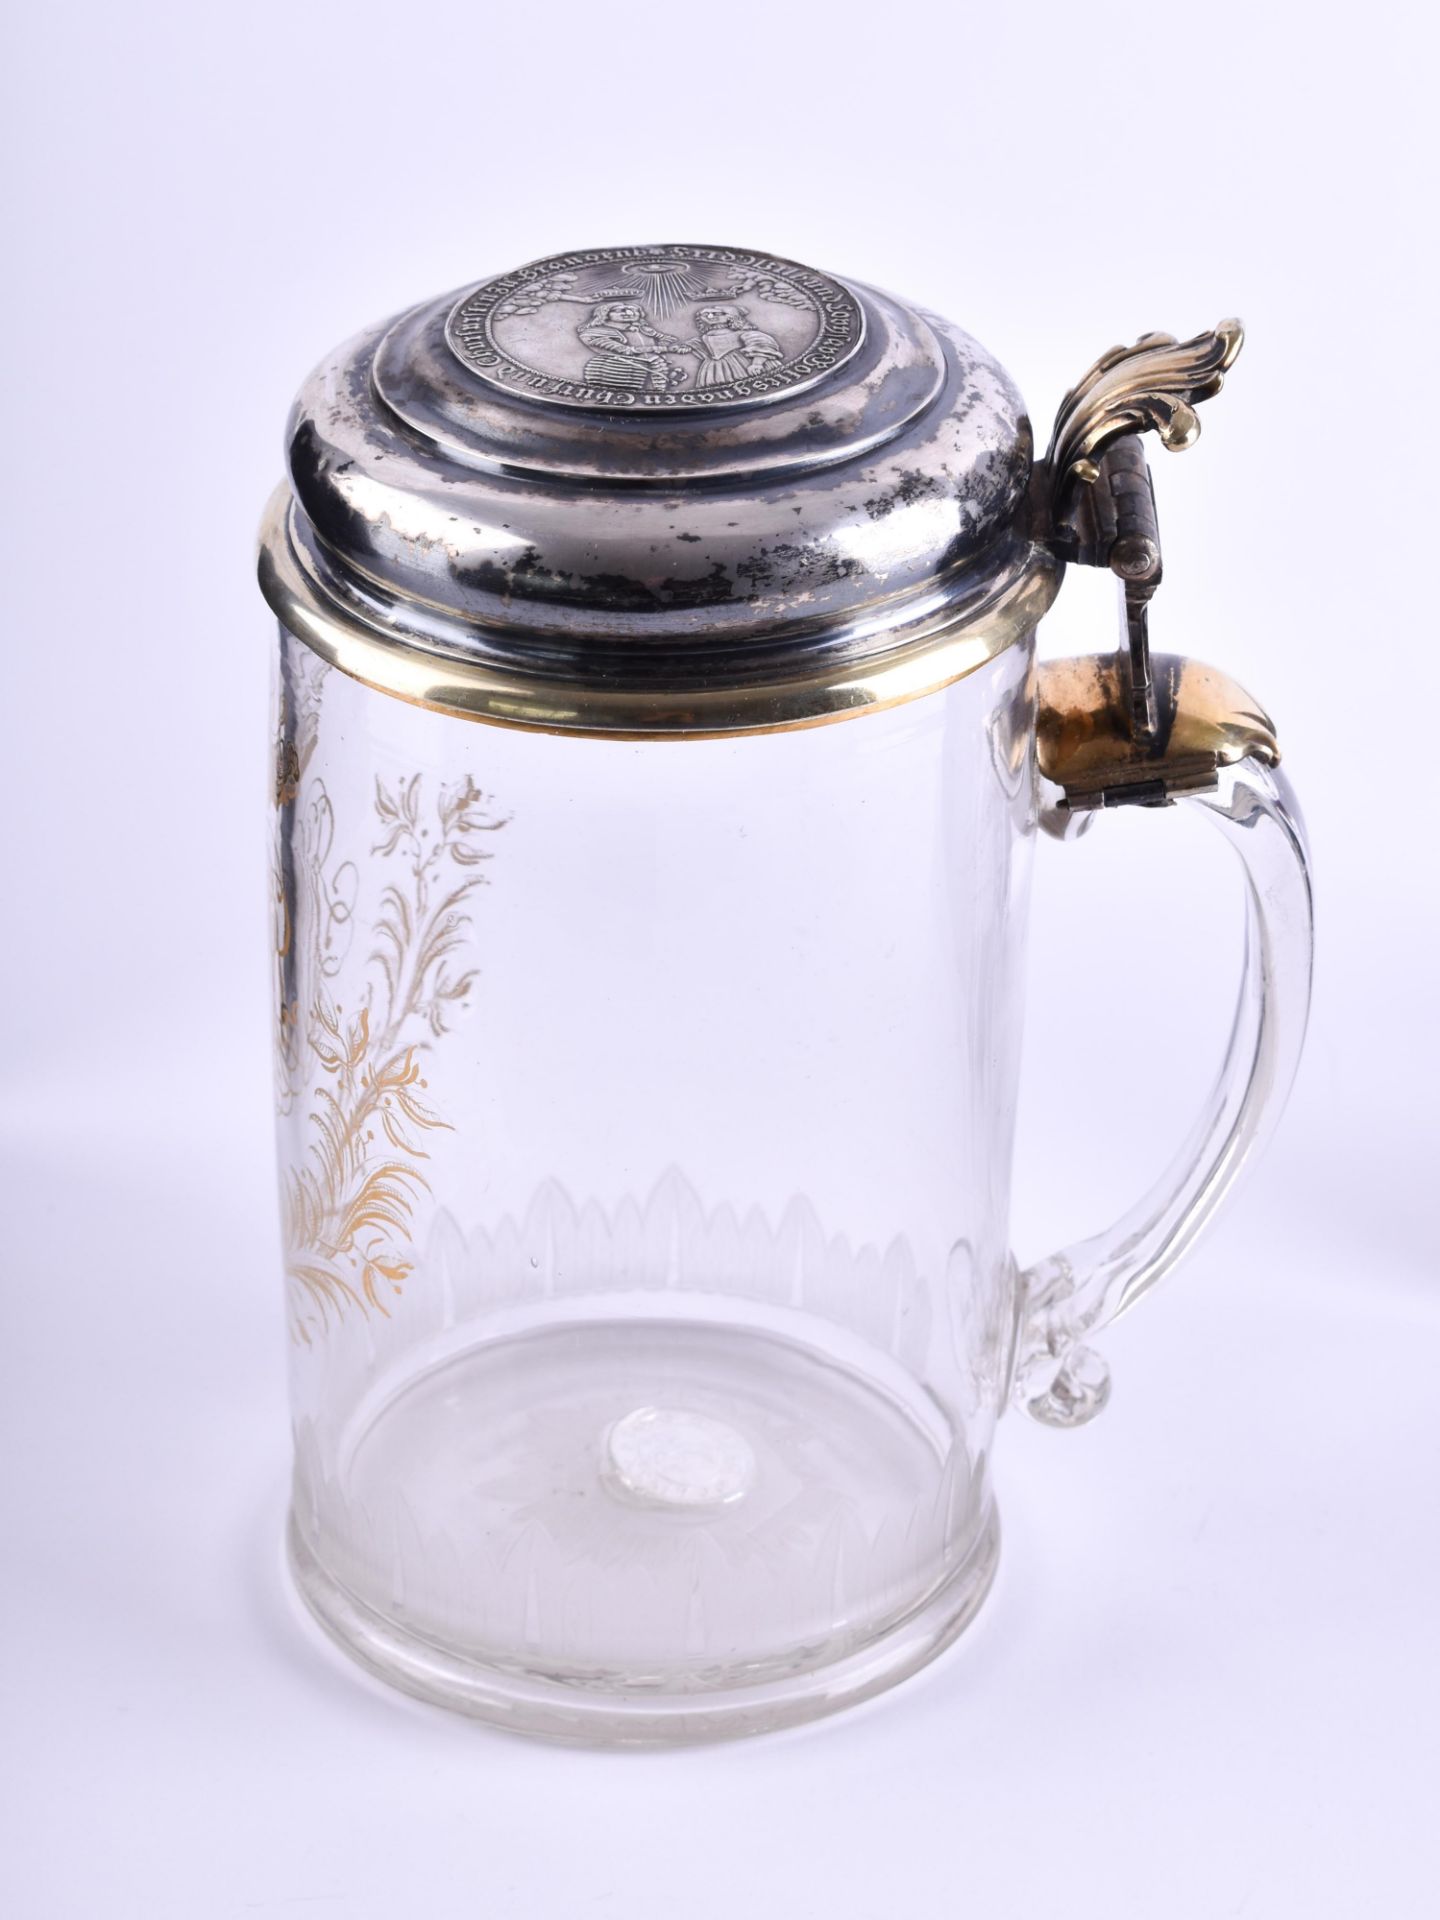 Wedding jug 17th century - Image 2 of 7